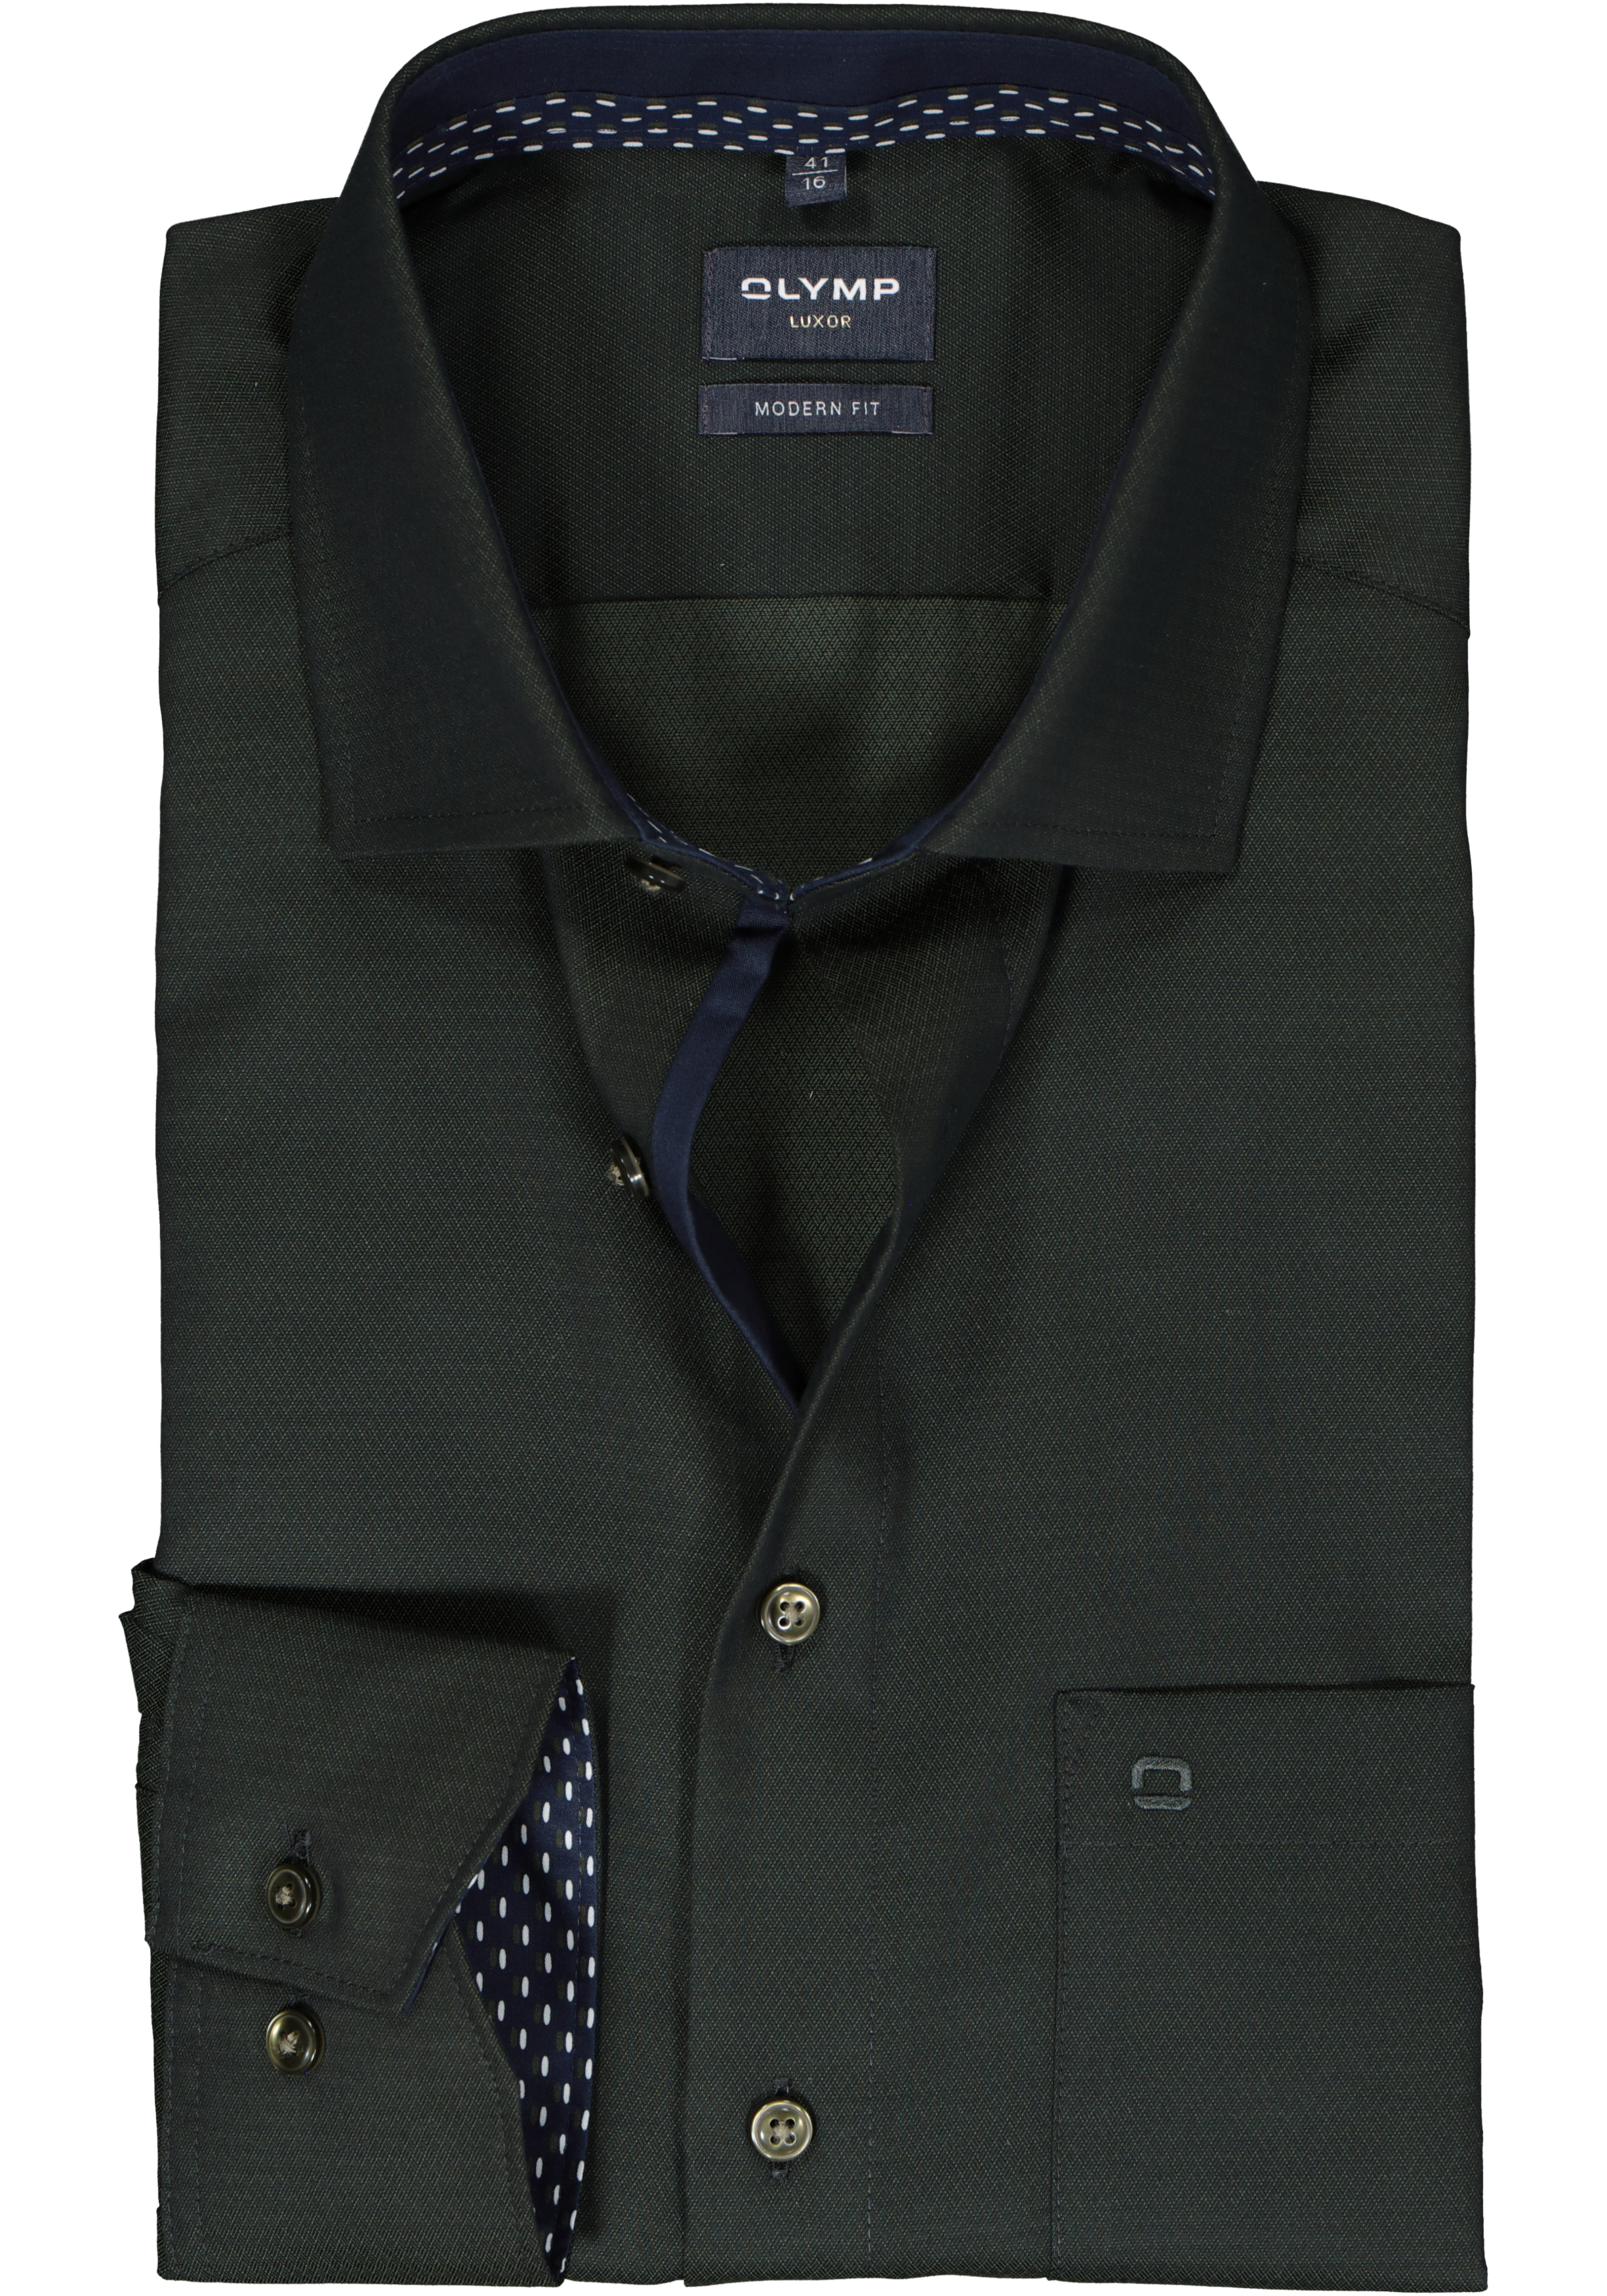 OLYMP modern fit overhemd, mouwlengte 7, structuur, olijfgroen (contrast)